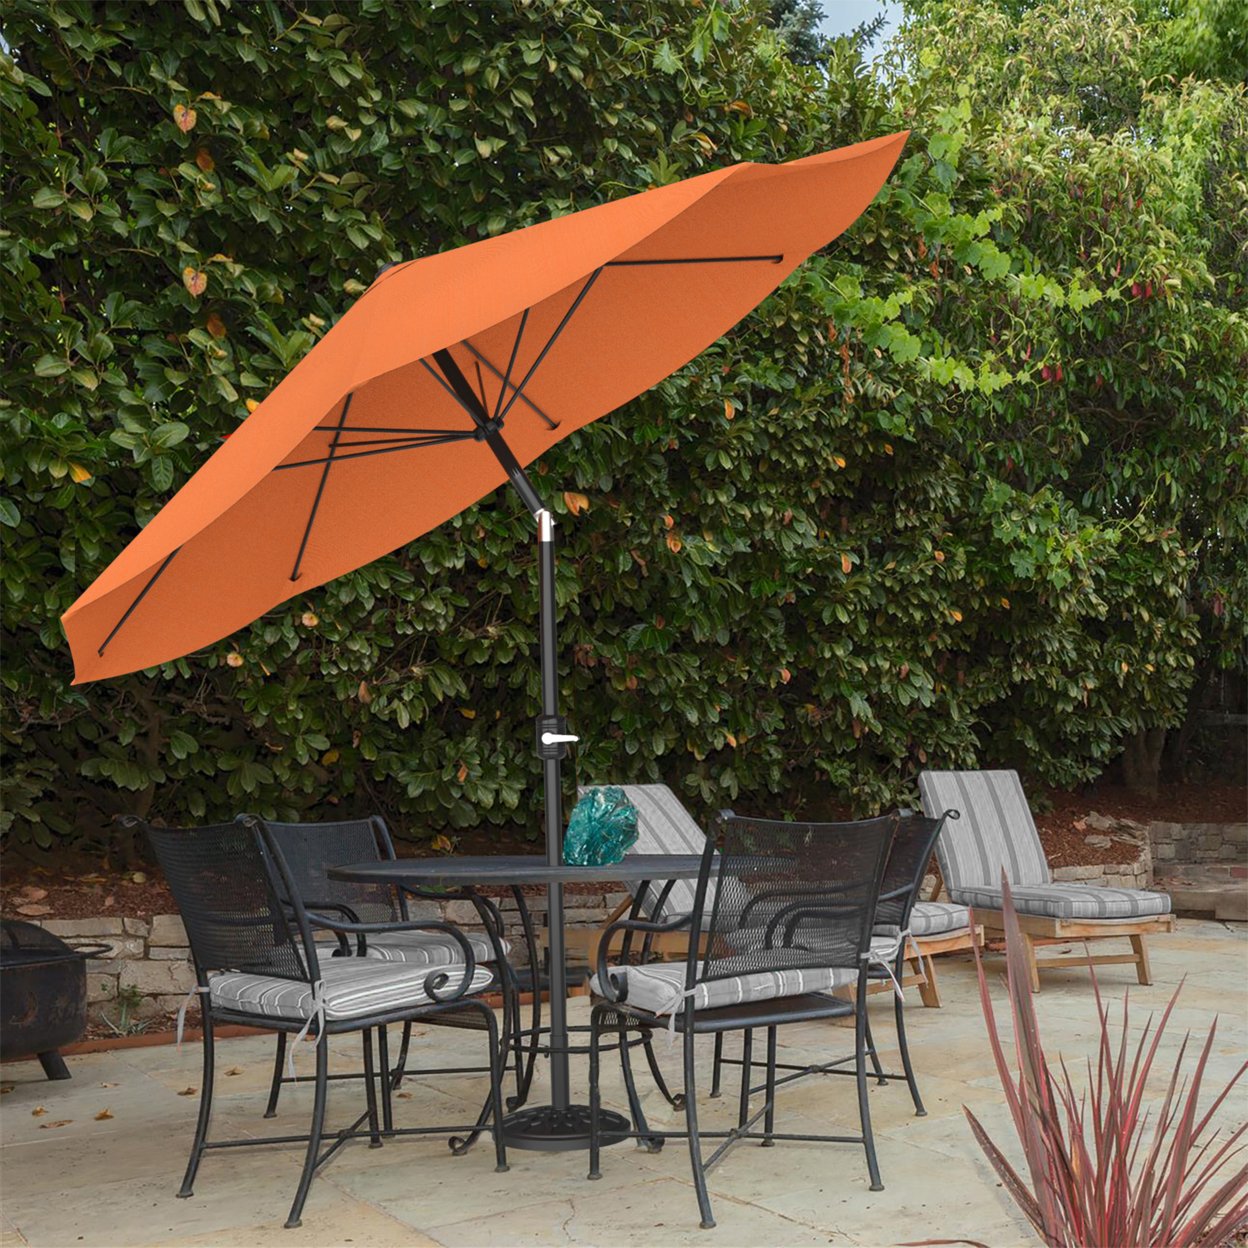 Patio Umbrella With Auto Tilt- Easy Crank Outdoor Table Umbrella Shade 10 Ft Terracotta